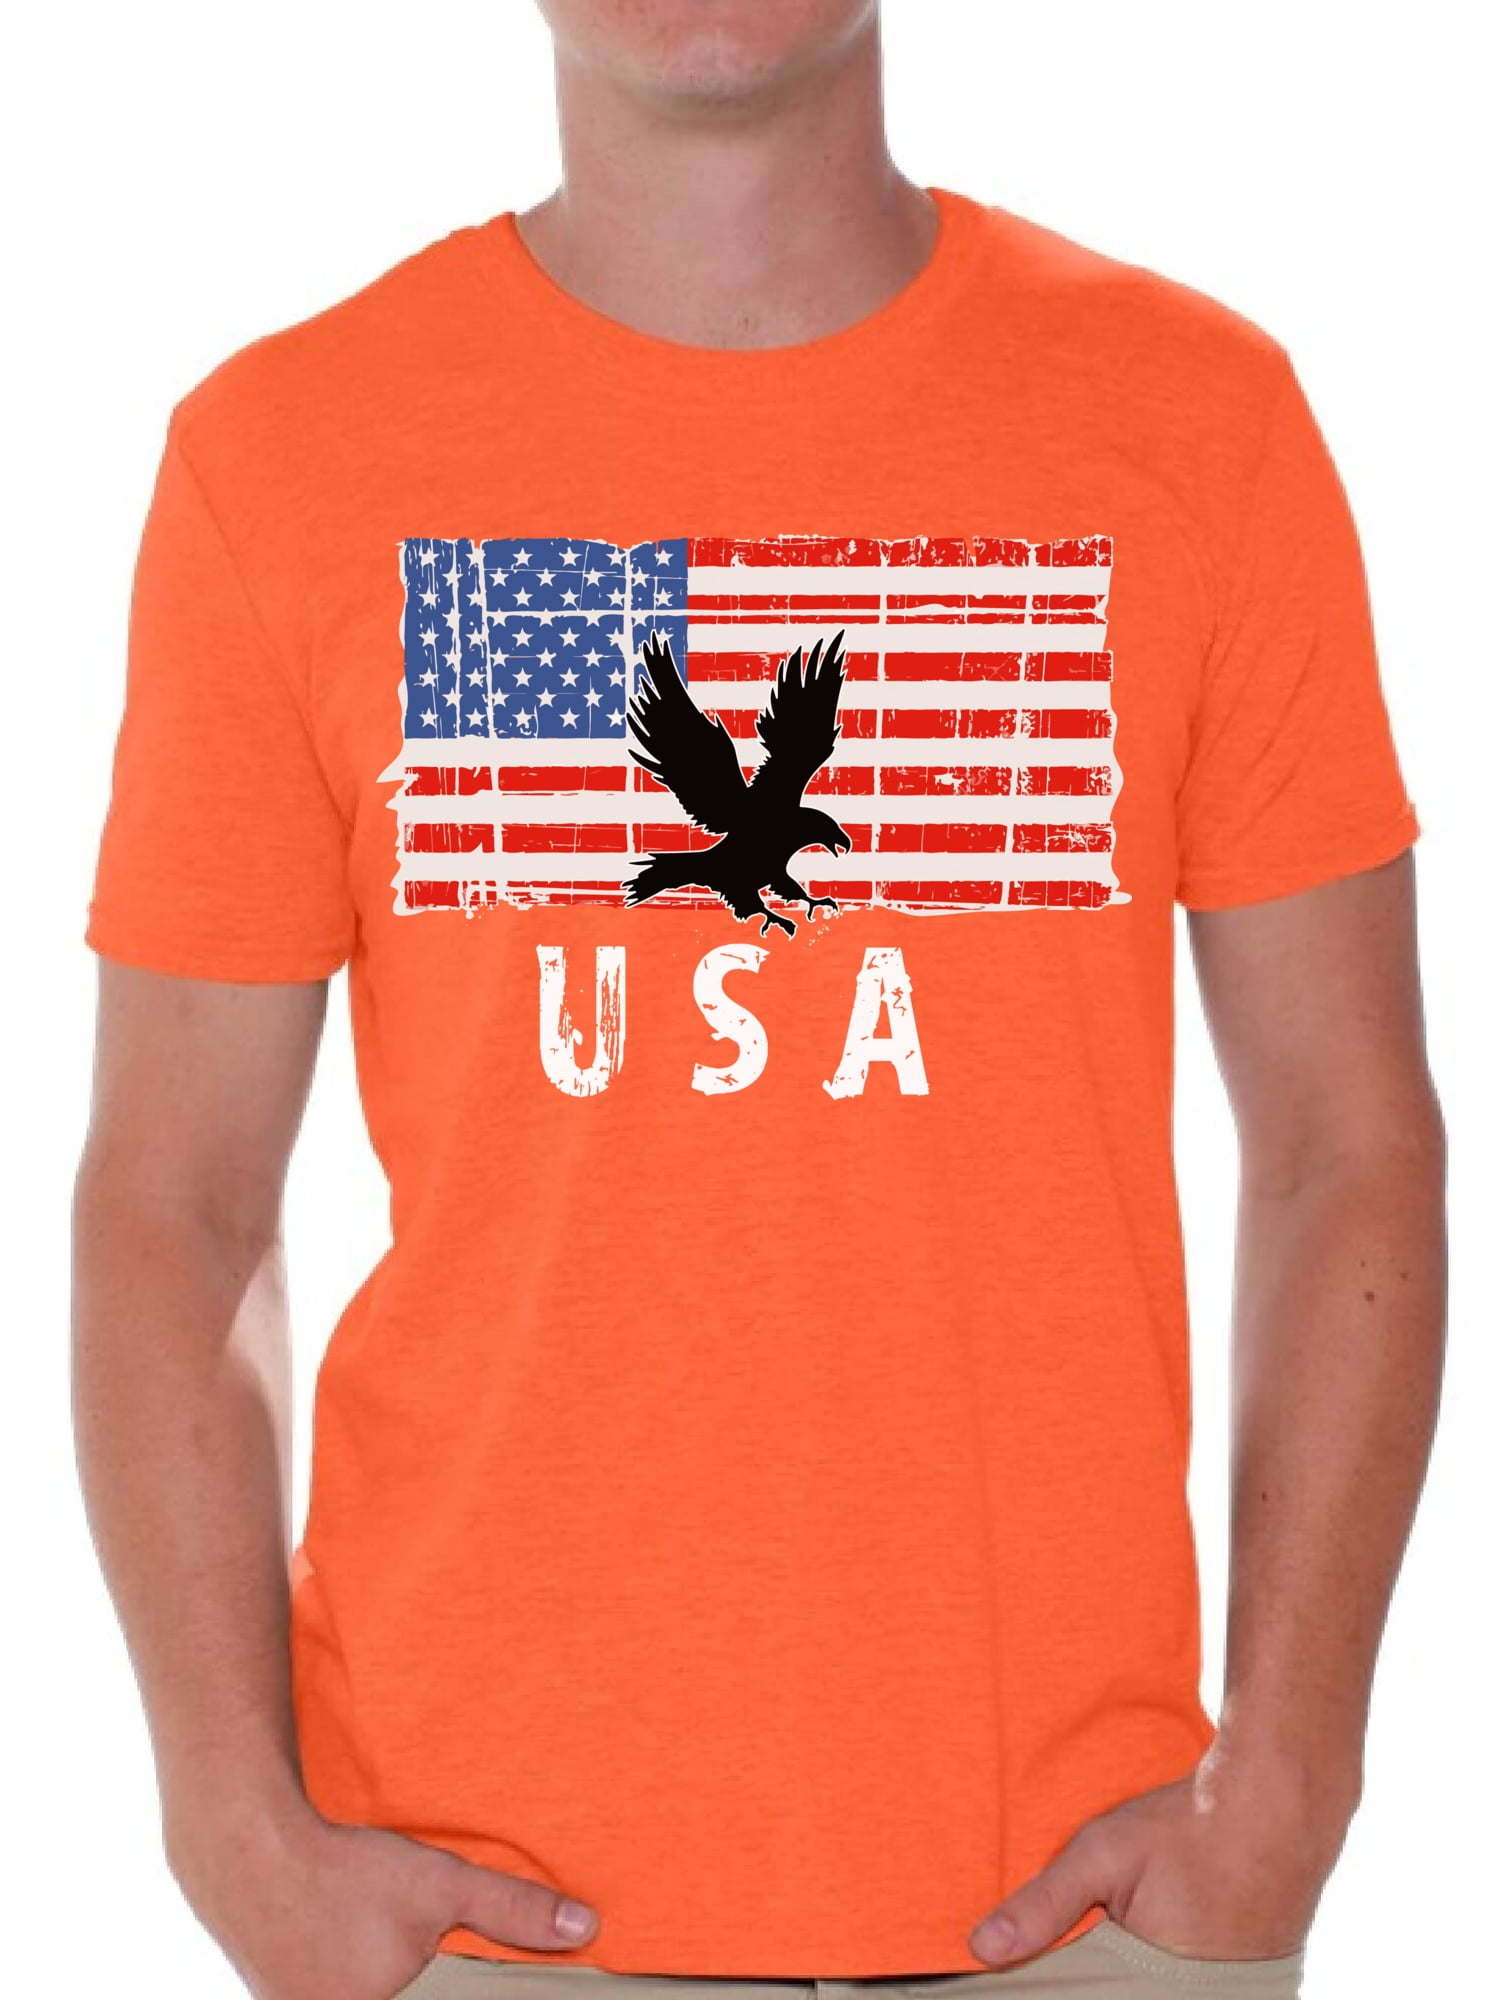 USA shirt United States of Ameowica short-Sleeve Unisex T-Shirt holiday fourth of july